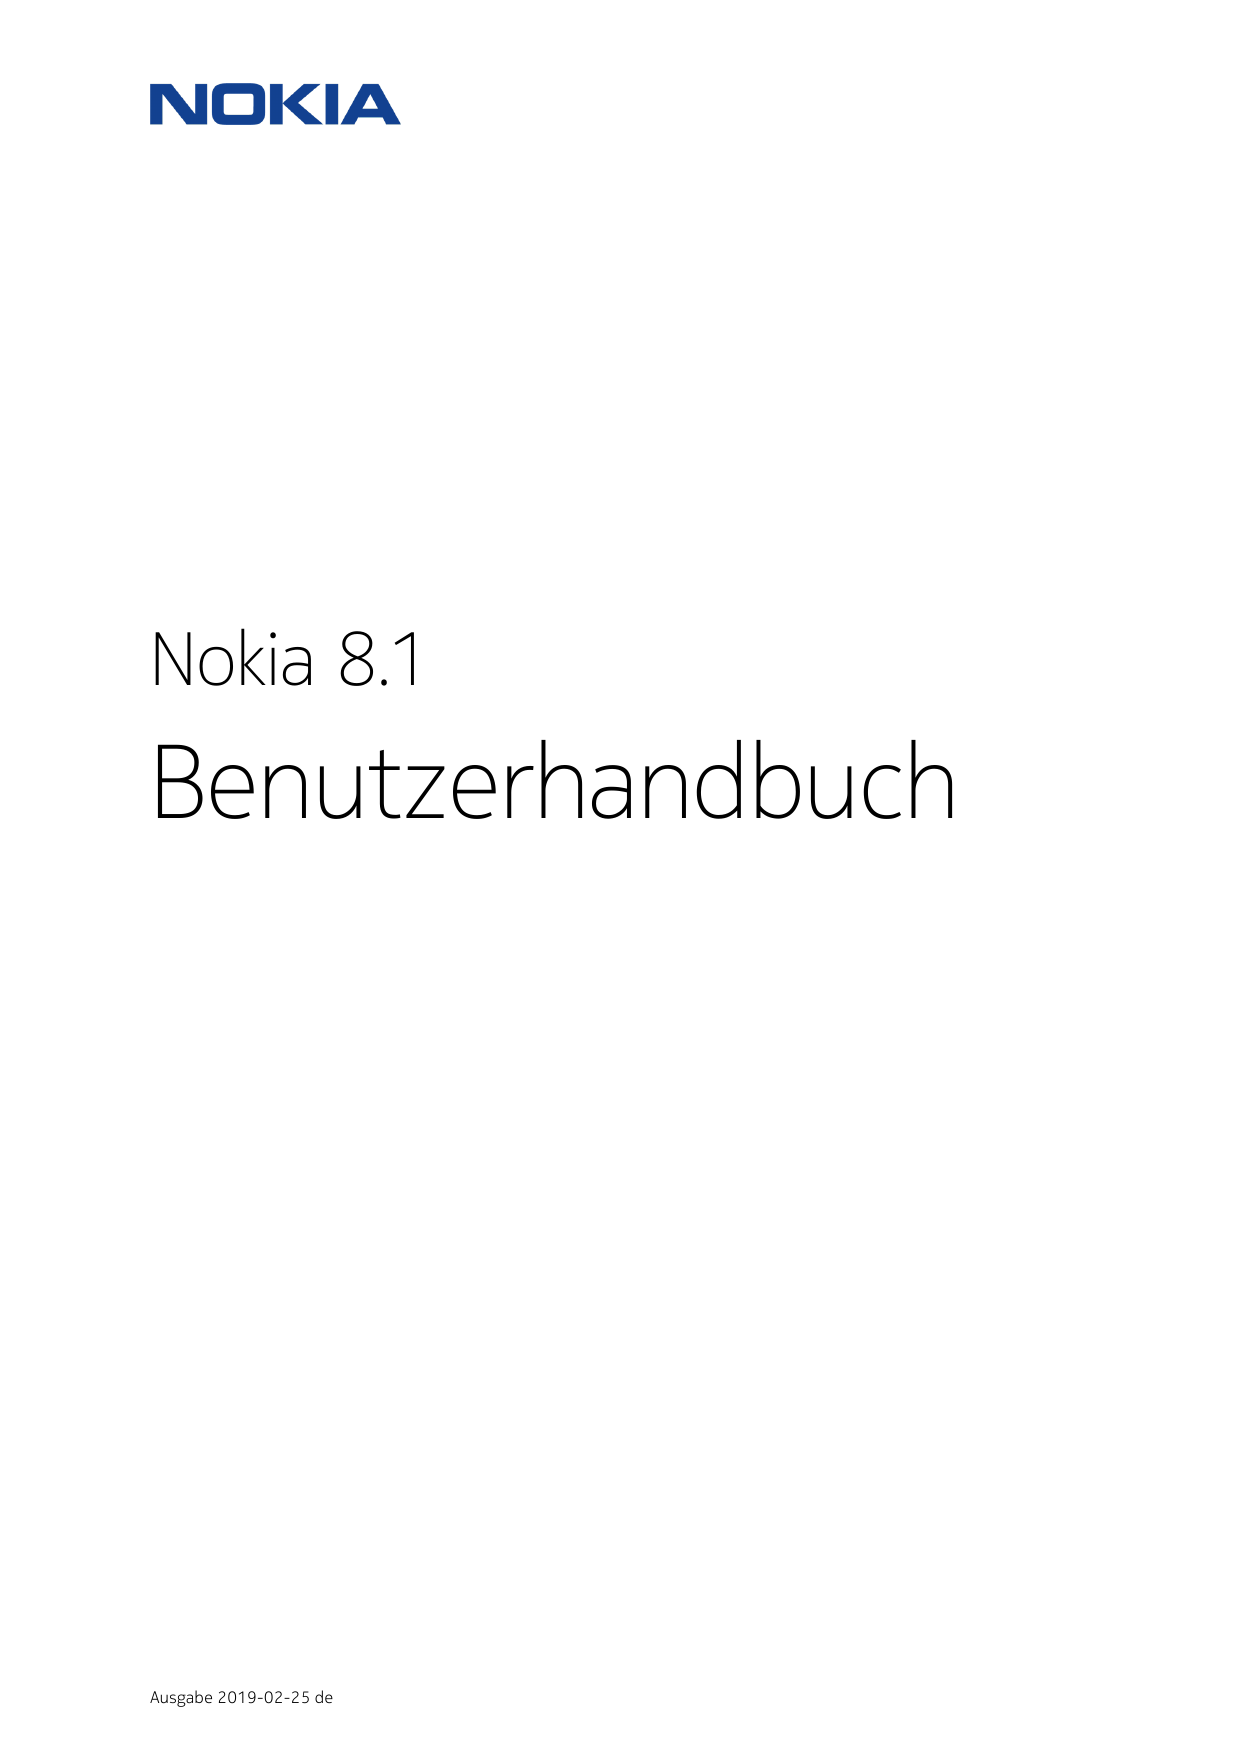 Nokia 8.1BenutzerhandbuchAusgabe 2019-02-25 de